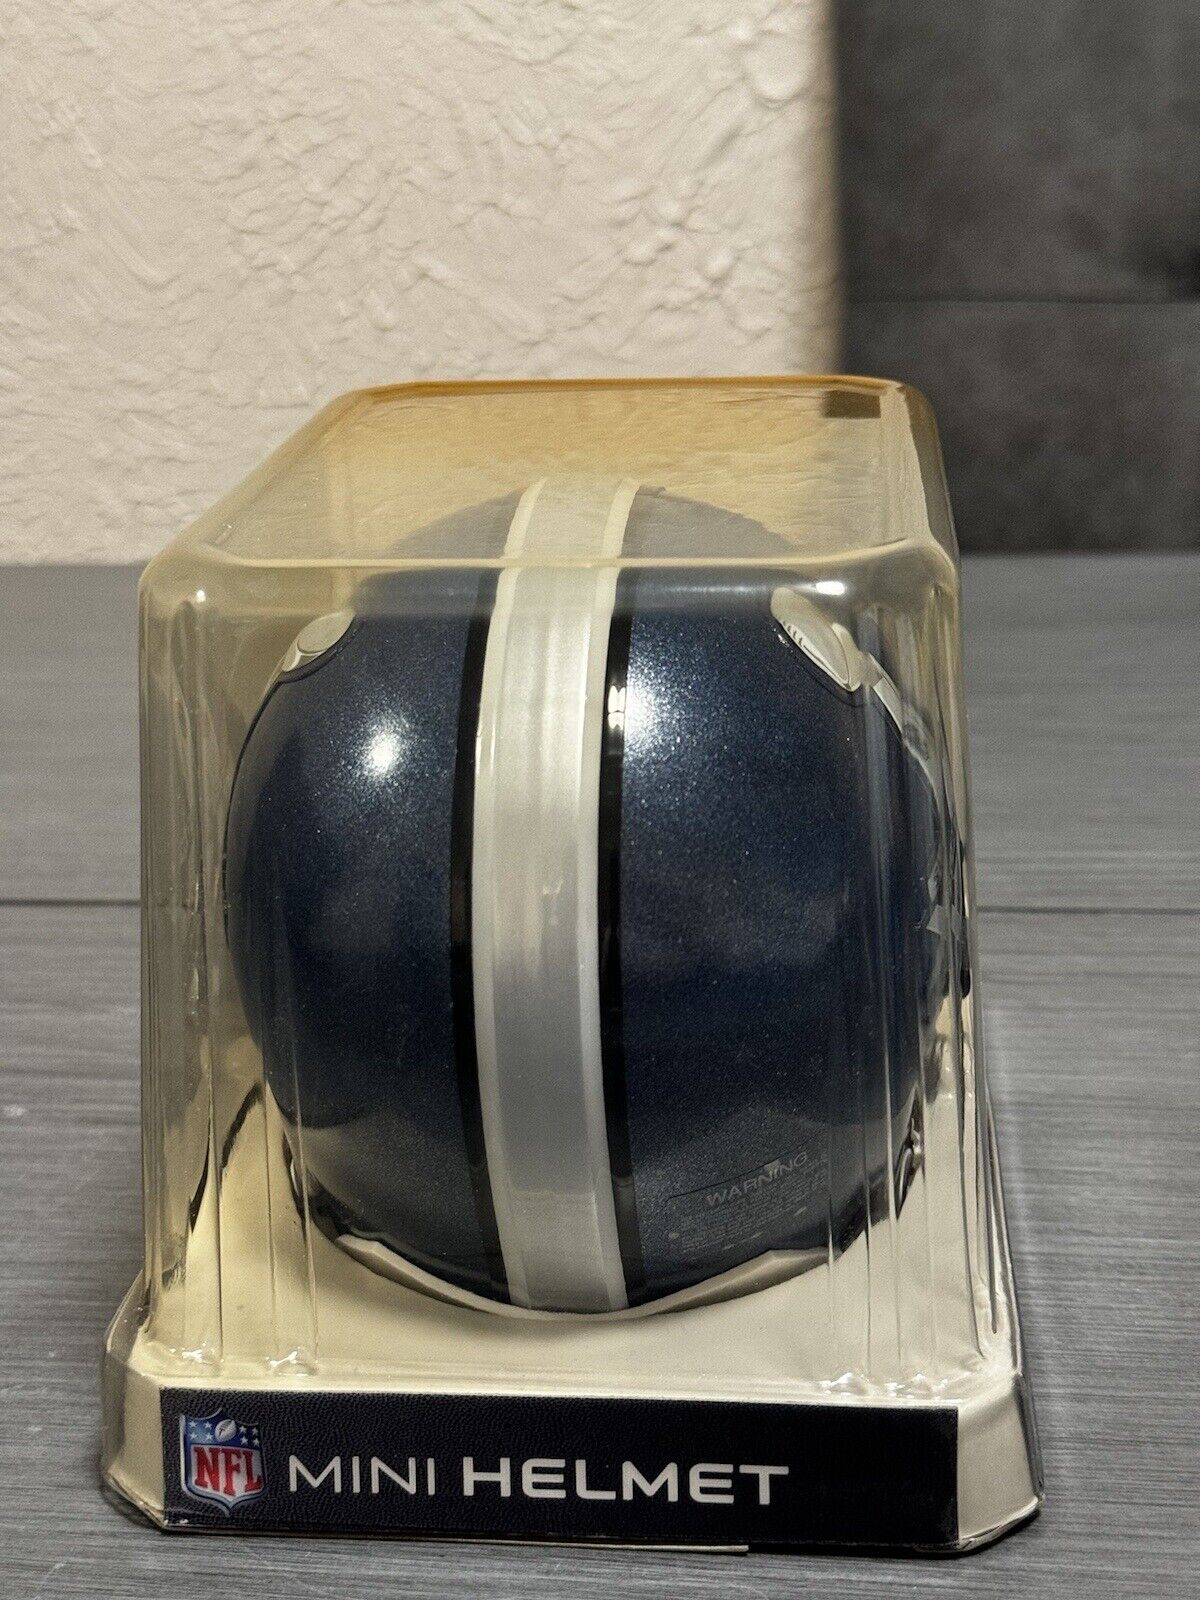 Super Bowl XLV 45 Riddell NFL Mini Helmet 3001506 Green Bay Packers vs. Steelers